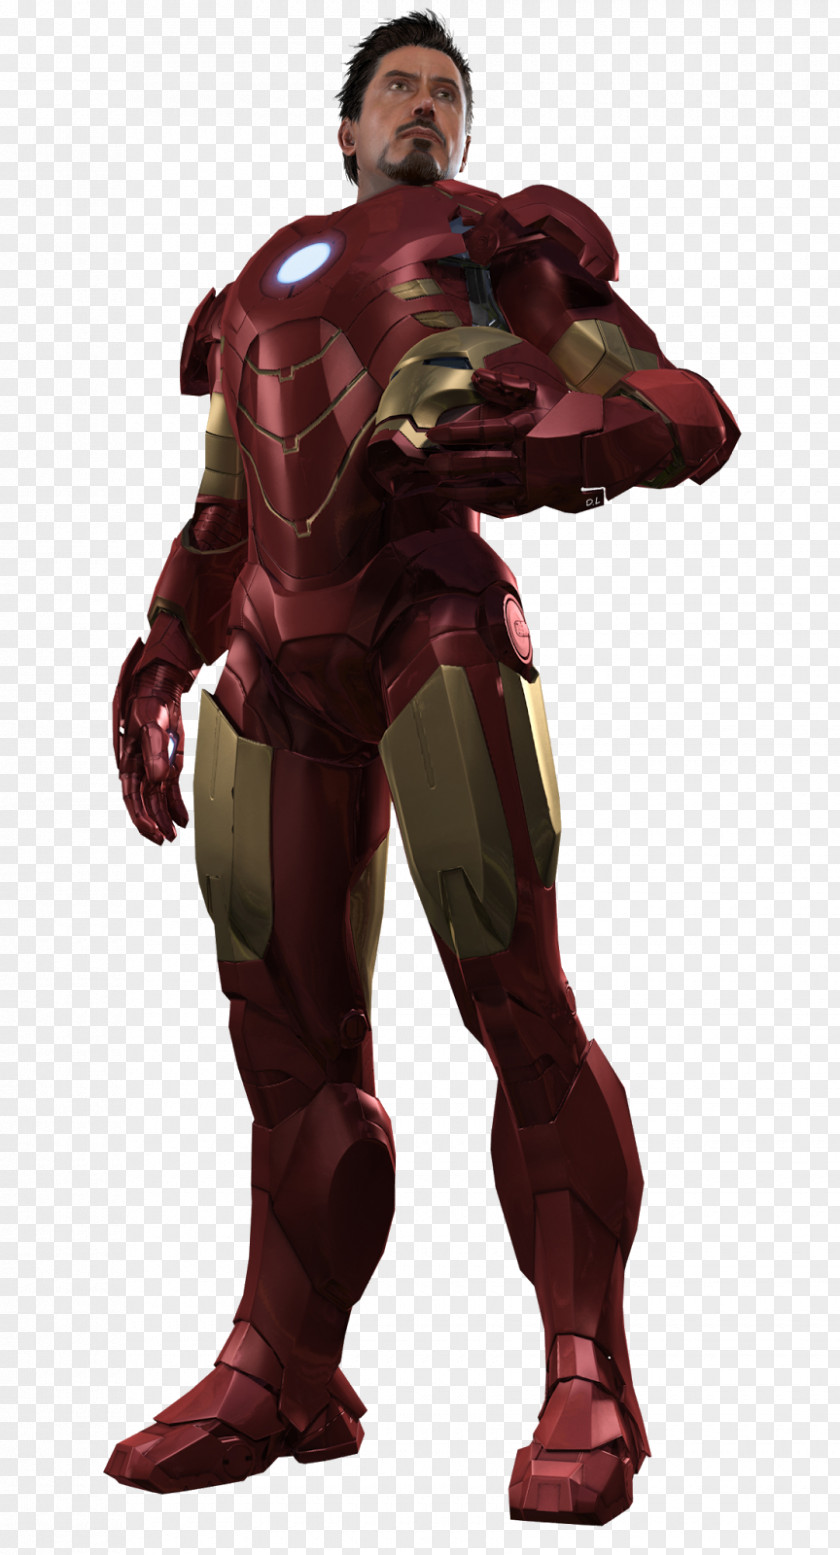 Iron Man 2 War Machine Man's Armor Video Game PNG